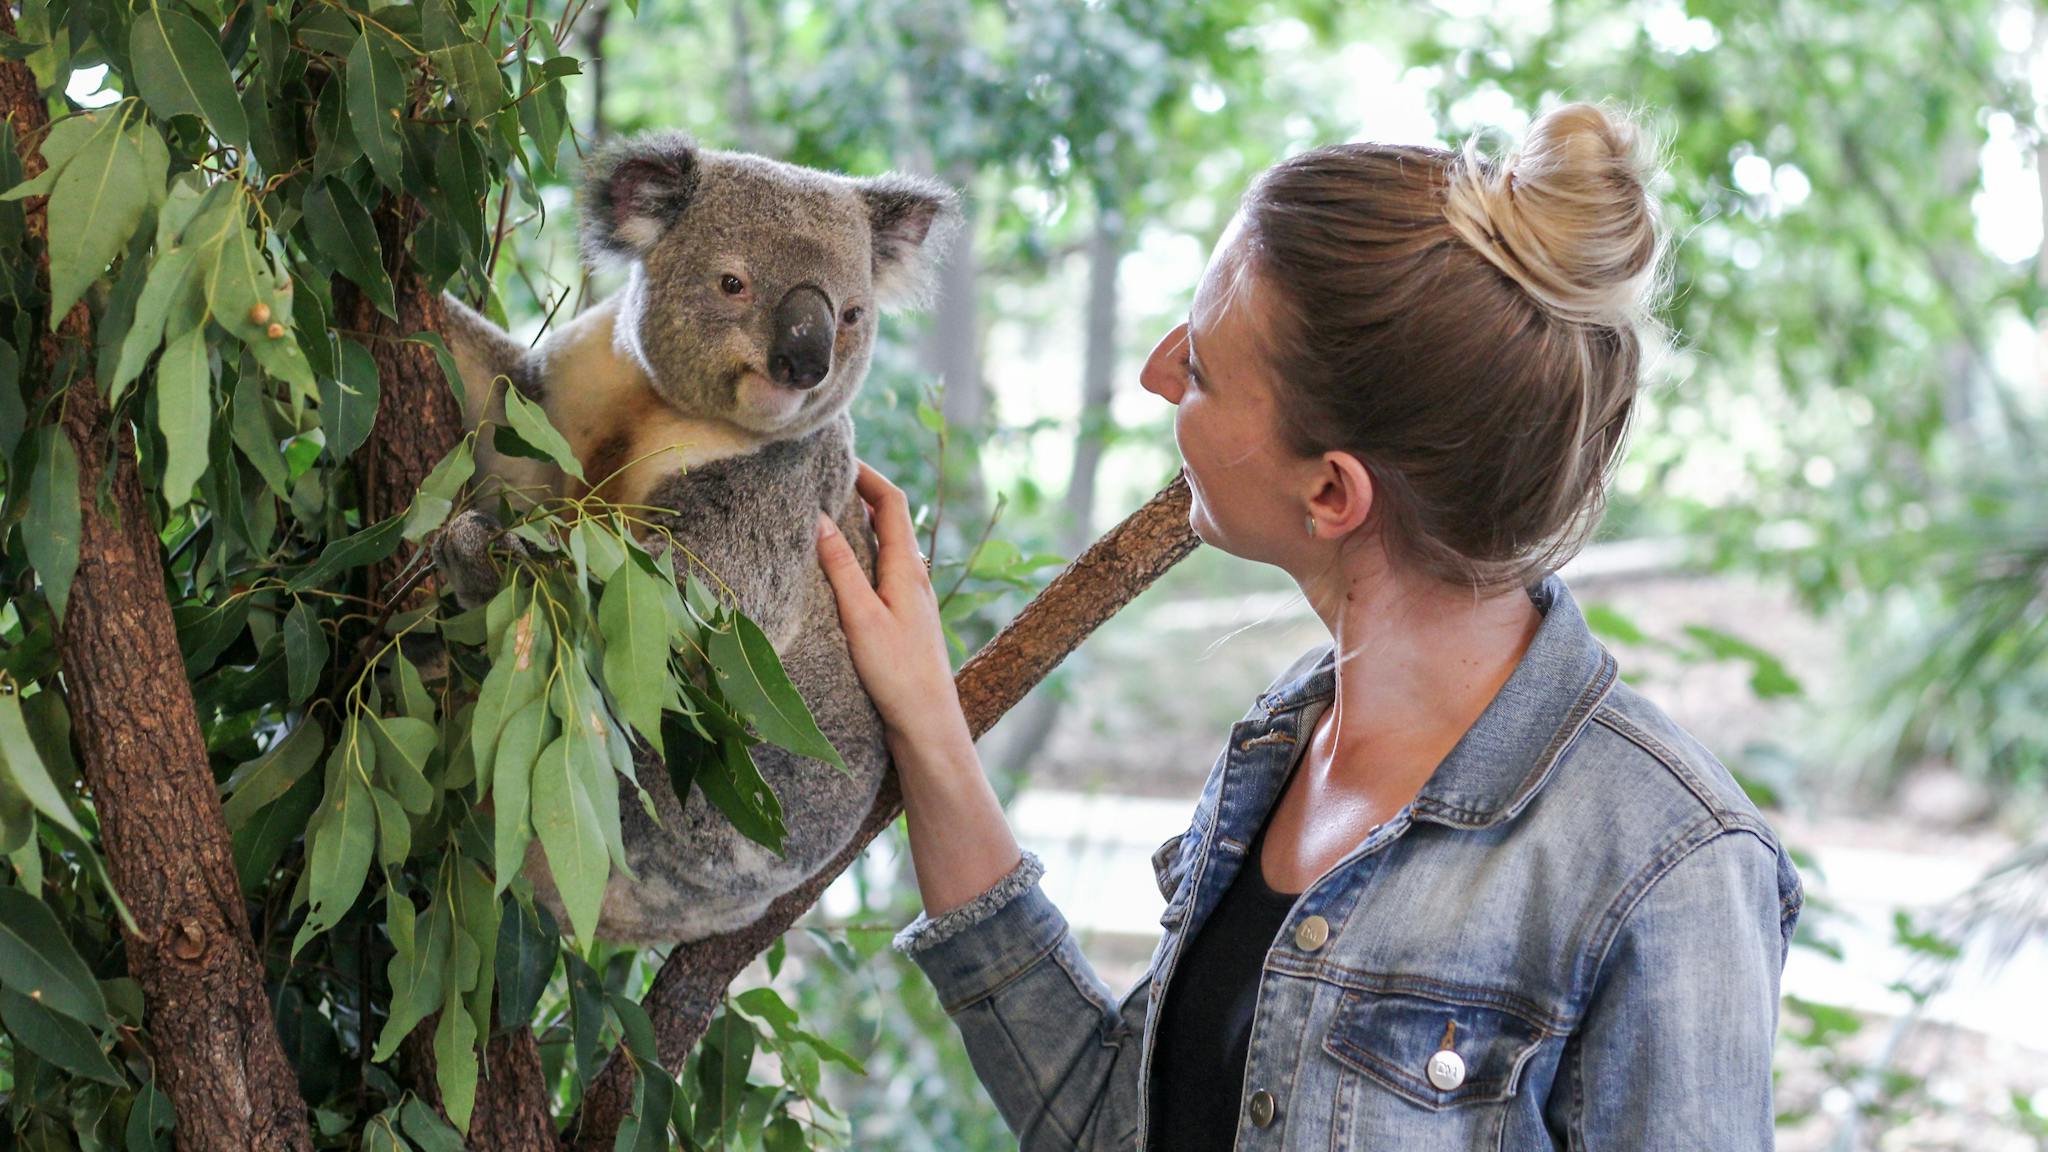 Touch a koala